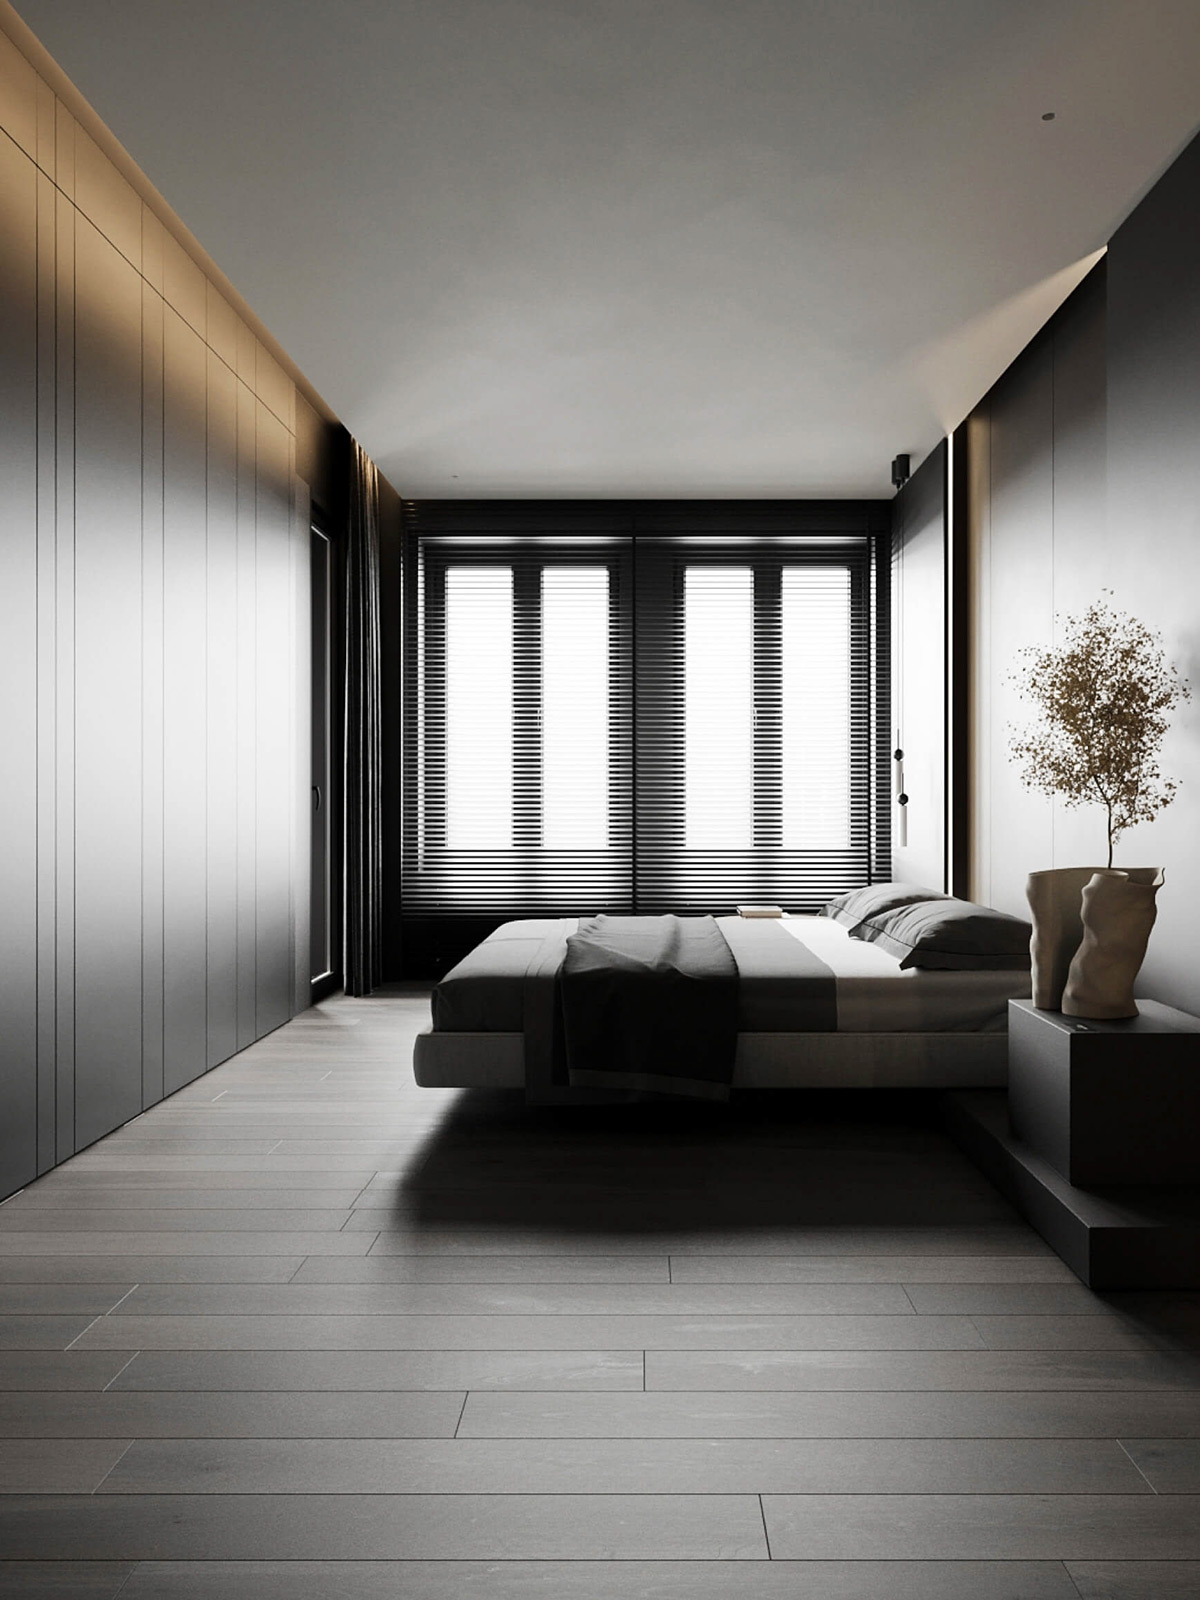 sophisticated gray scale monochromatic interior design 5